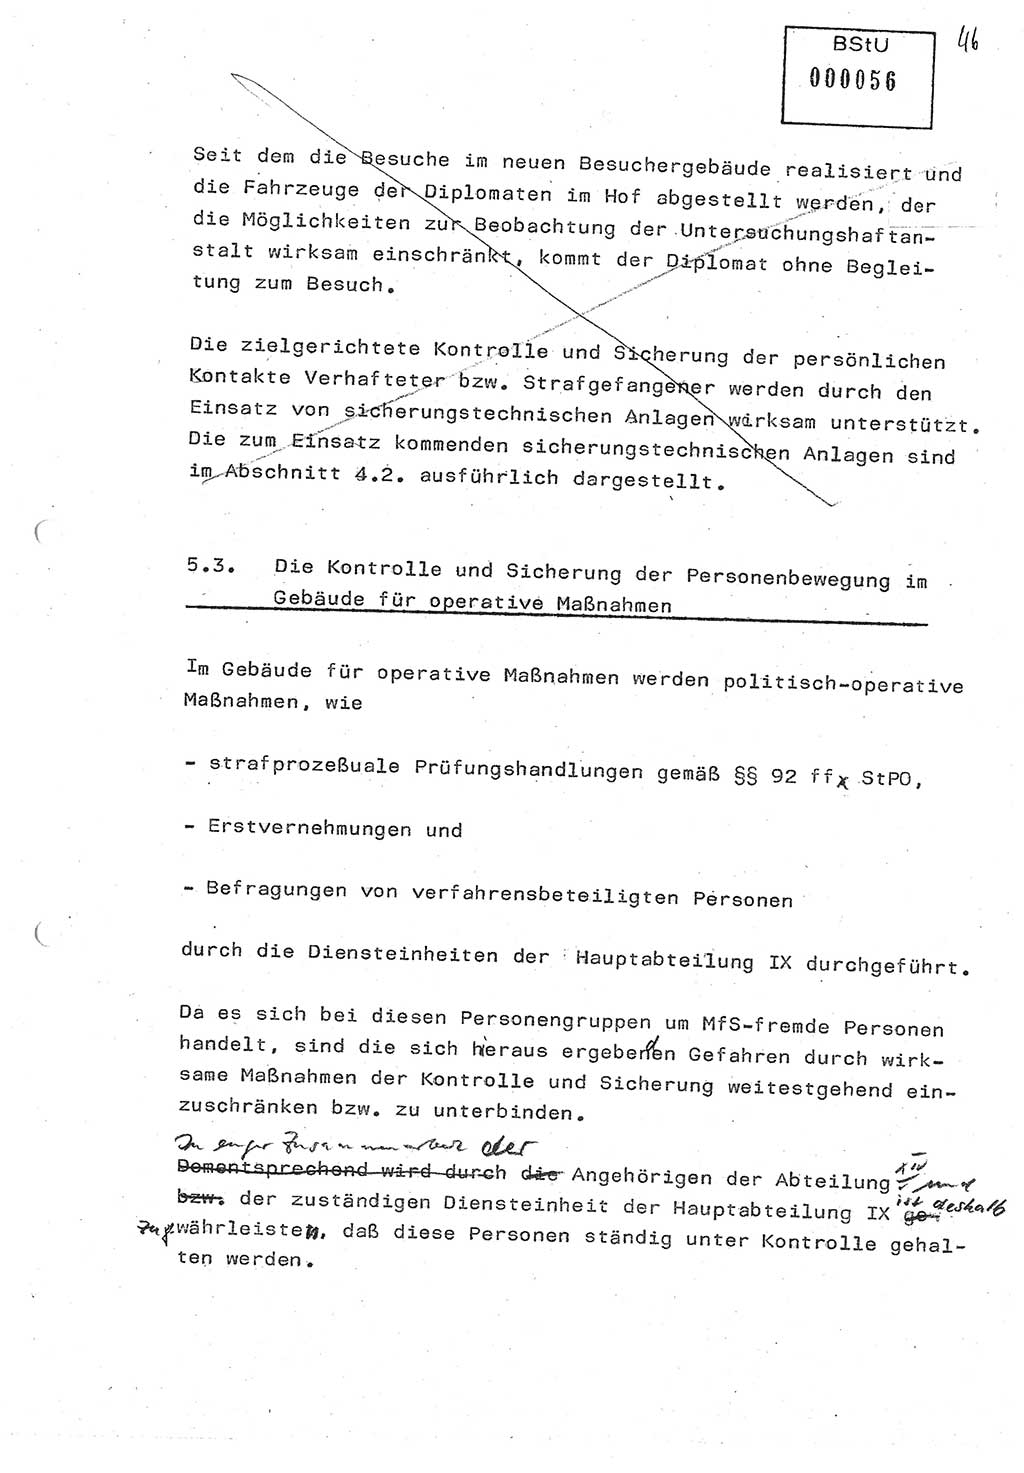 Diplomarbeit (Entwurf) Oberleutnant Peter Parke (Abt. ⅩⅣ), Ministerium für Staatssicherheit (MfS) [Deutsche Demokratische Republik (DDR)], Juristische Hochschule (JHS), Geheime Verschlußsache (GVS) o001-98/86, Potsdam 1986, Seite 56 (Dipl.-Arb. MfS DDR JHS GVS o001-98/86 1986, S. 56)